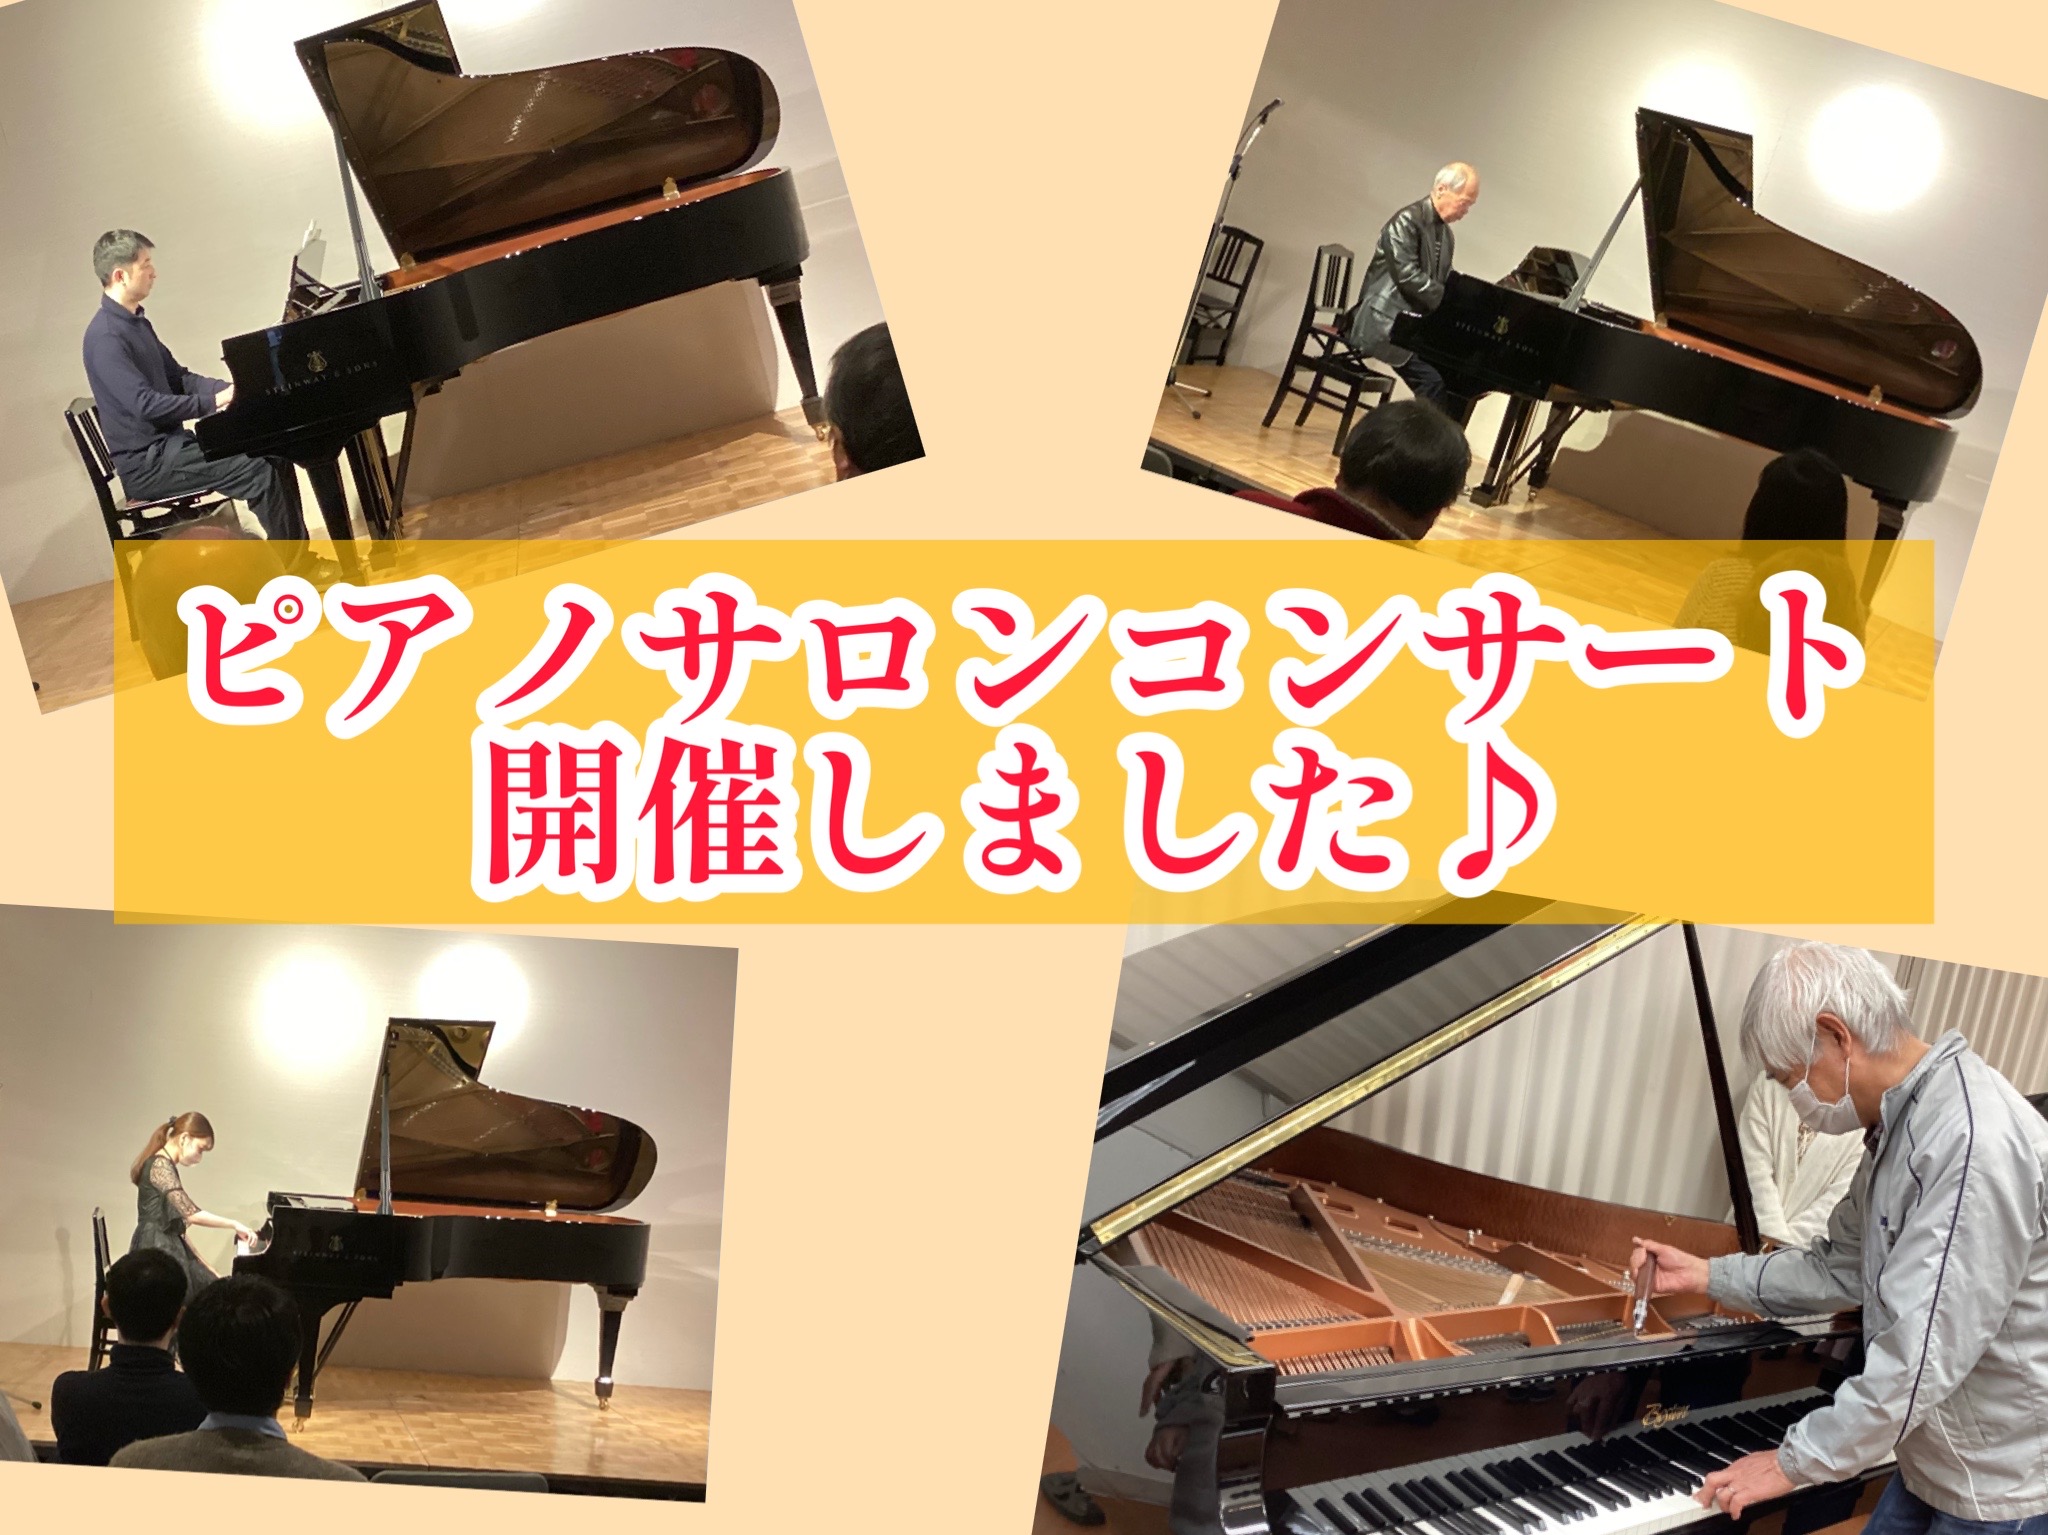 皆さまこんにちは！ ピアノインストラクターの秋本です。 1月21日(土)、島村楽器ピアノショールーム八千代店にて ららぽーと柏の葉店会員様による「ピアノサロンコンサート」を開催いたしました！ 今回はそのコンサートの様子をご紹介いたします♪ CONTENTSピアノサロンコンサートの記録ピアノサロン体験 […]